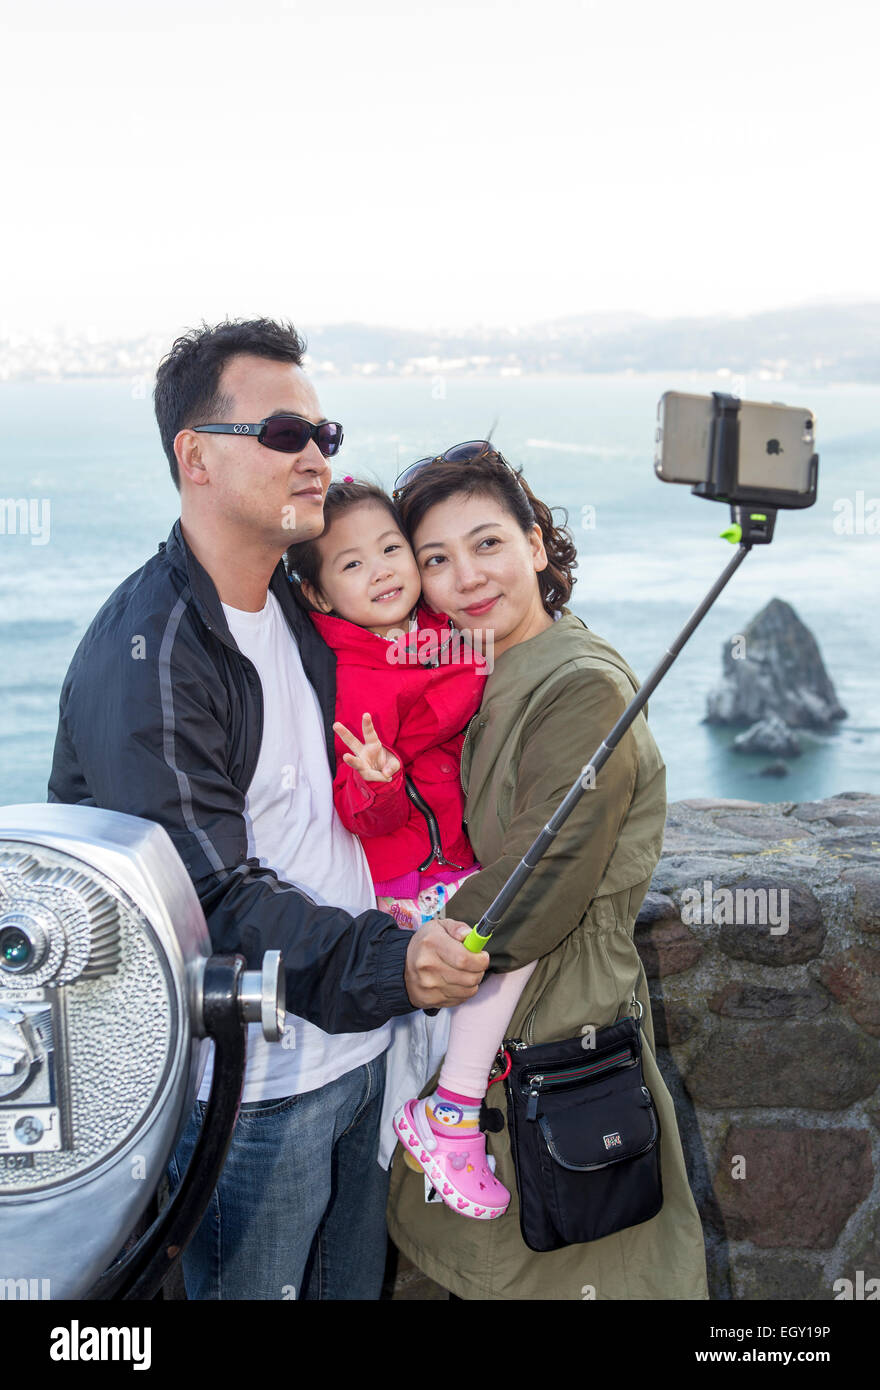 Les touristes, famille, en selfies selfies, photo, stick selfies, Vista Point, côté nord du Golden Gate Bridge, de la ville de Sausalito, Sausalito, Californie Banque D'Images